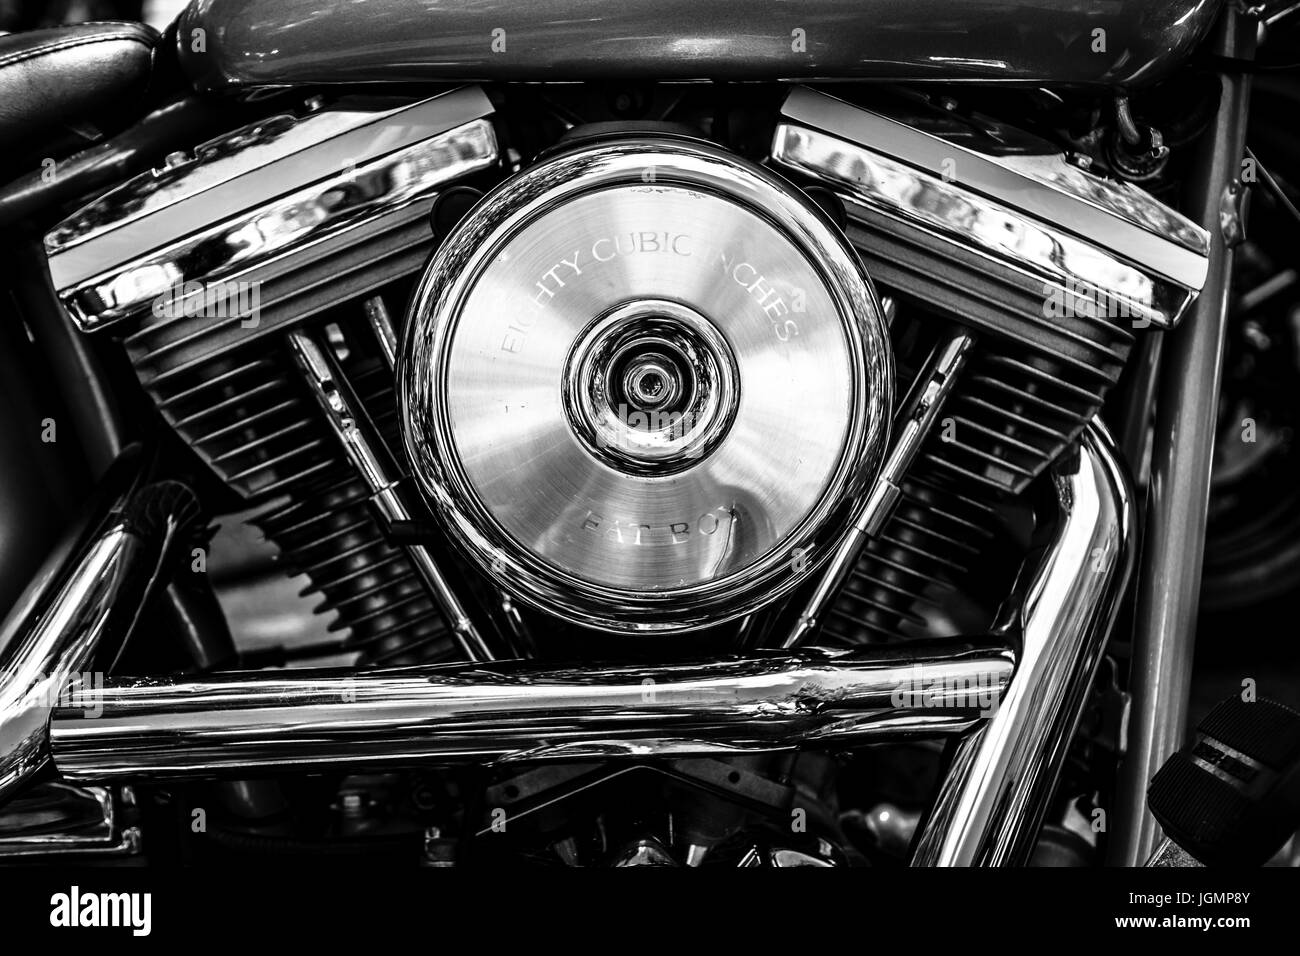 BERLIN - 17 juin 2017 : moteur de moto Harley-Davidson, close-up. Noir et blanc. Les Classic Days Berlin 2017. Banque D'Images